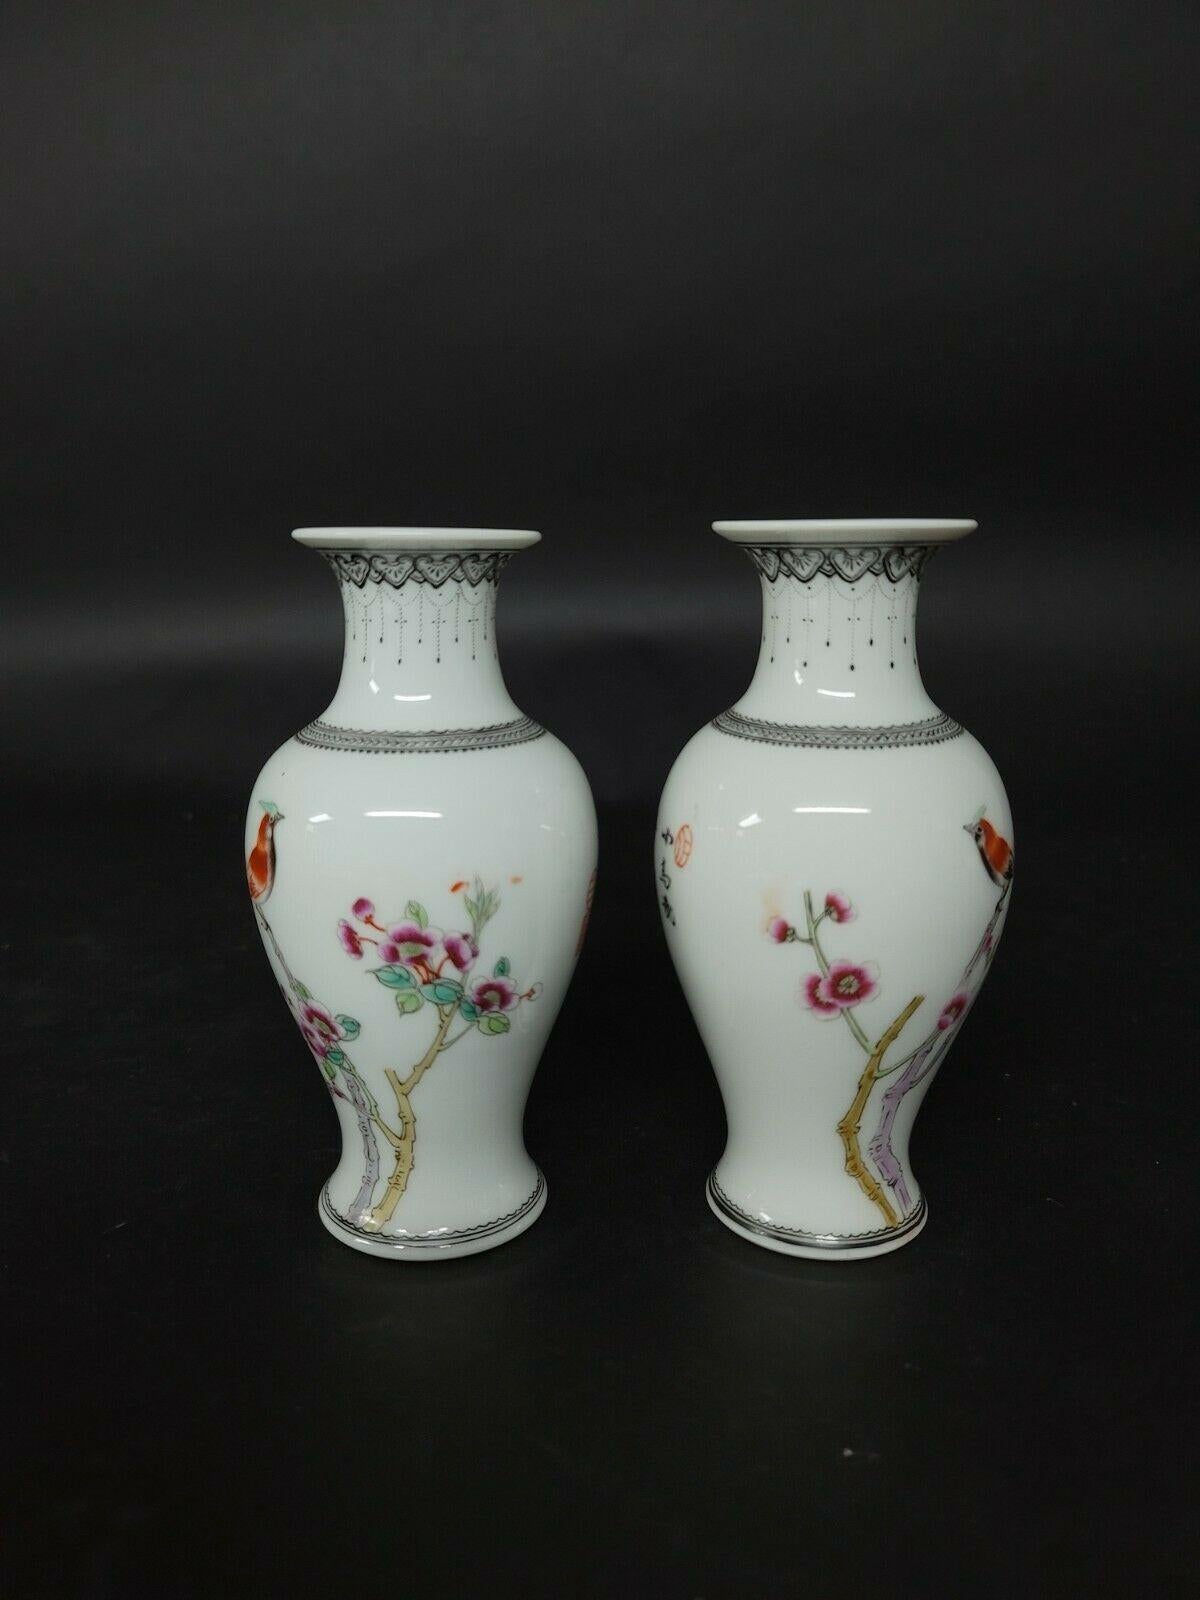 Petite paire de vases assortis en porcelaine chinoise Famille rose représentant des oiseaux et des fleurs avec des poèmes décrivant le beau printemps, une journée de brise avec des chants d'oiseaux et des fleurs en fleurs, une vie merveilleuse dans